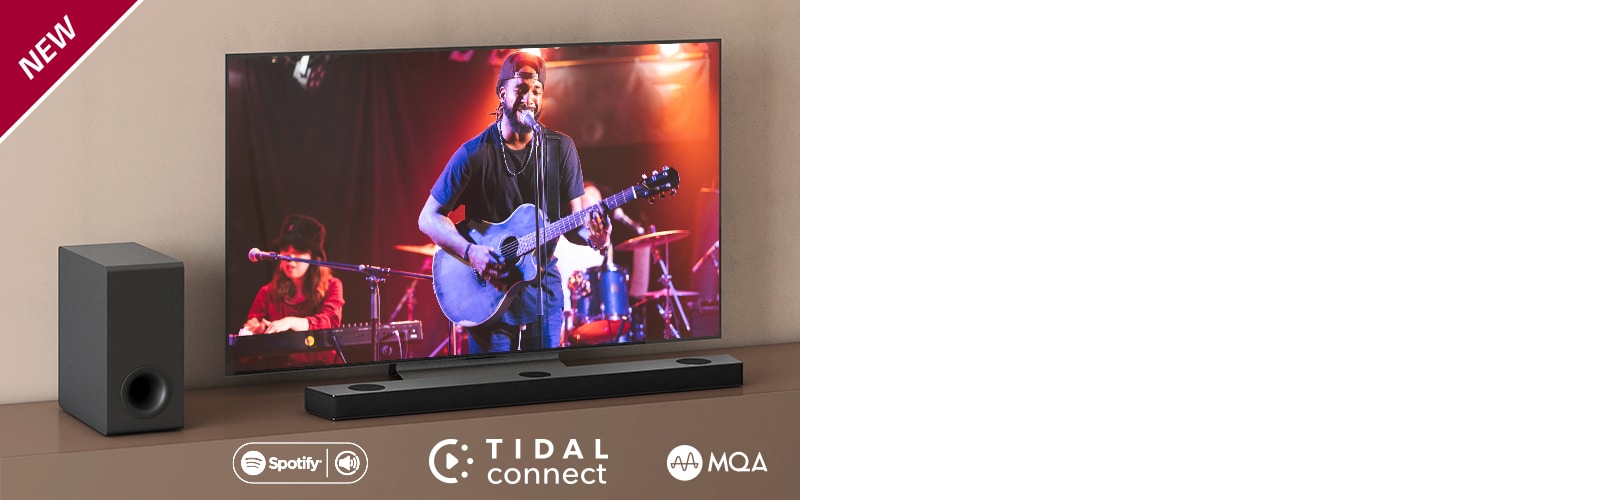 Ein LG TV steht auf dem braunen Regal, eine LG Sound Bar S75QR ist davor platziert. Ein Subwoofer steht links vom Fernseher. Auf dem Bildschirm läuft ein Konzert. In der linken oberen Ecke steht „NEU“.